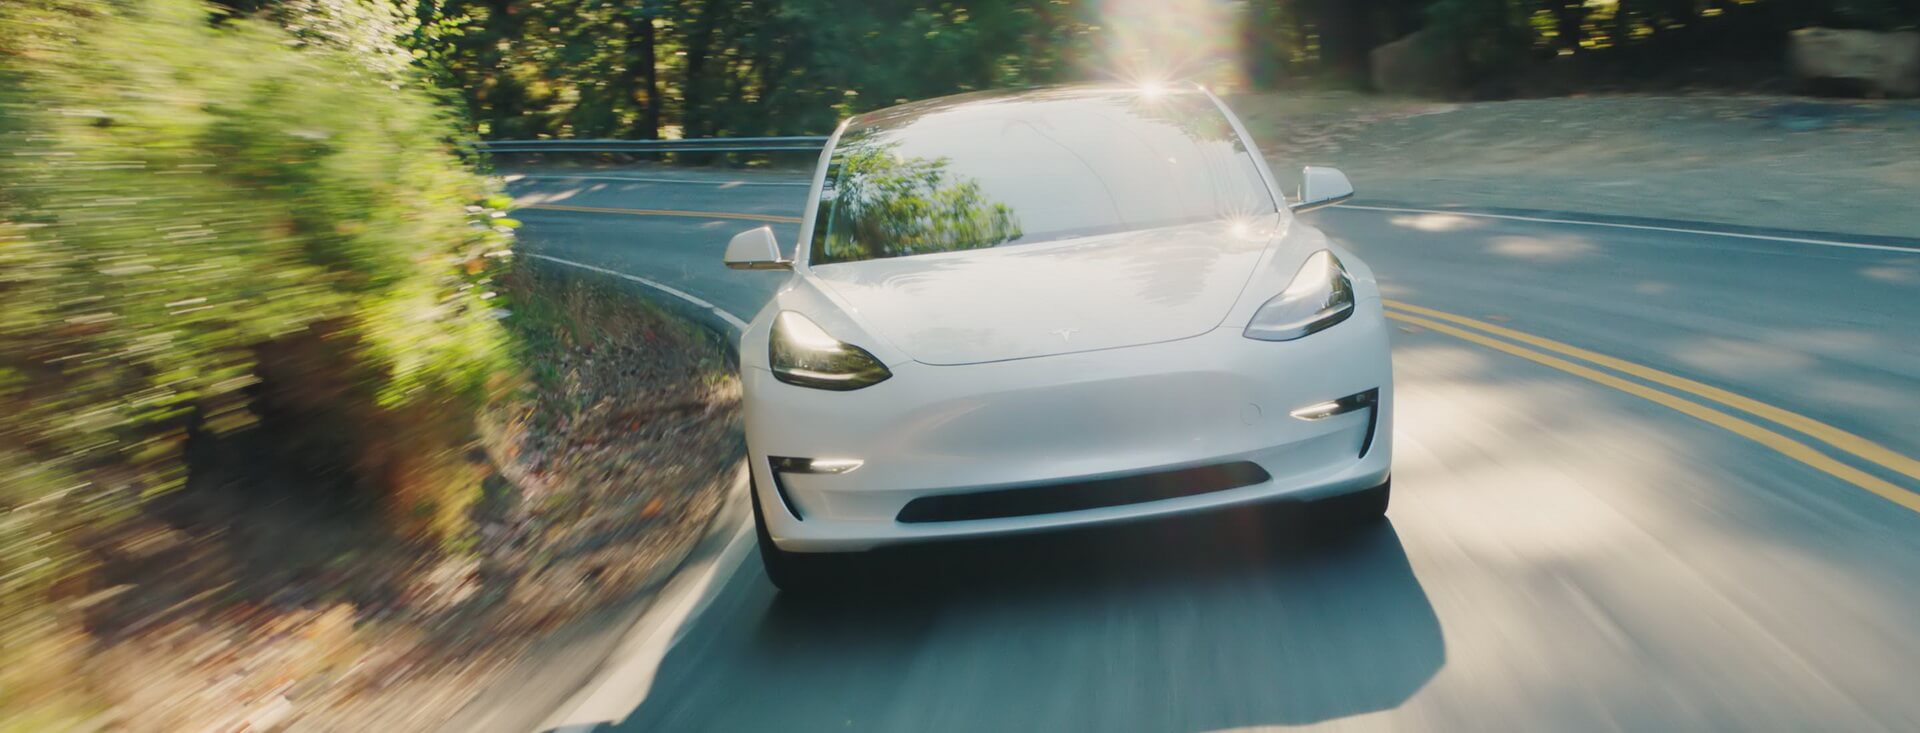 Tesla Model 3 — вид спереди